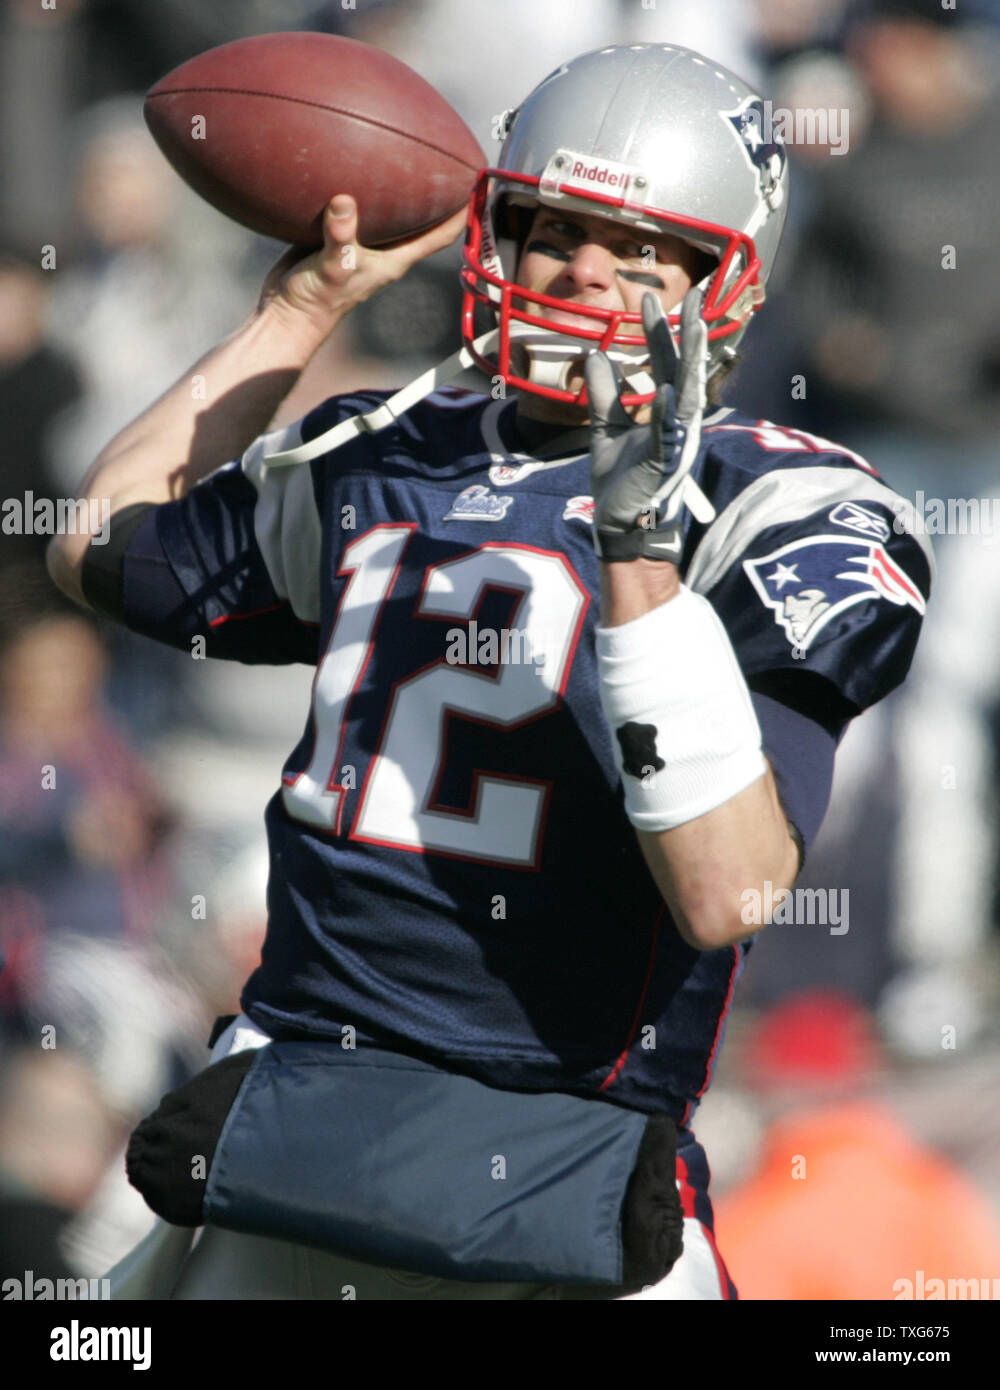 New England Patriots Quarterback Tom Brady (12) wirft einen Pass beim Warm-ups vor dem AFC wildcard Endspiel Spiel gegen die Baltimore Ravens im Gillette Stadium in Foxboro, Massachusetts am 10. Januar 2010. UPI/Matthew Healey Stockfoto